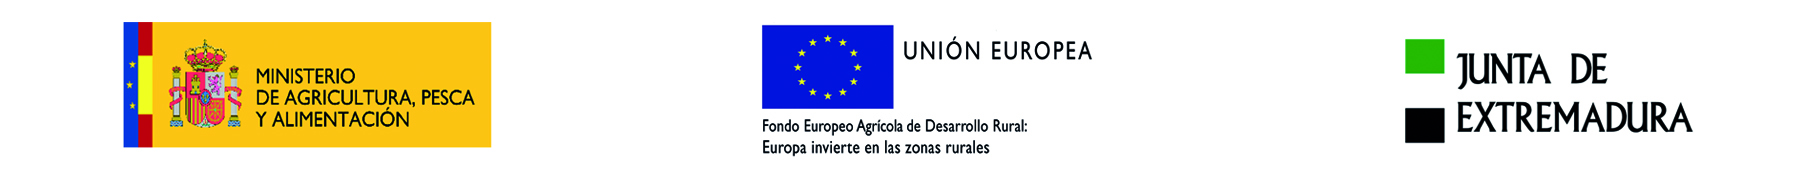 LOGOTIPO MINISTERIO DE AGRICULTURA, PESCA Y ALIMENTACION - UNION EUROPEA - JUNTA DE EXTREMADURA